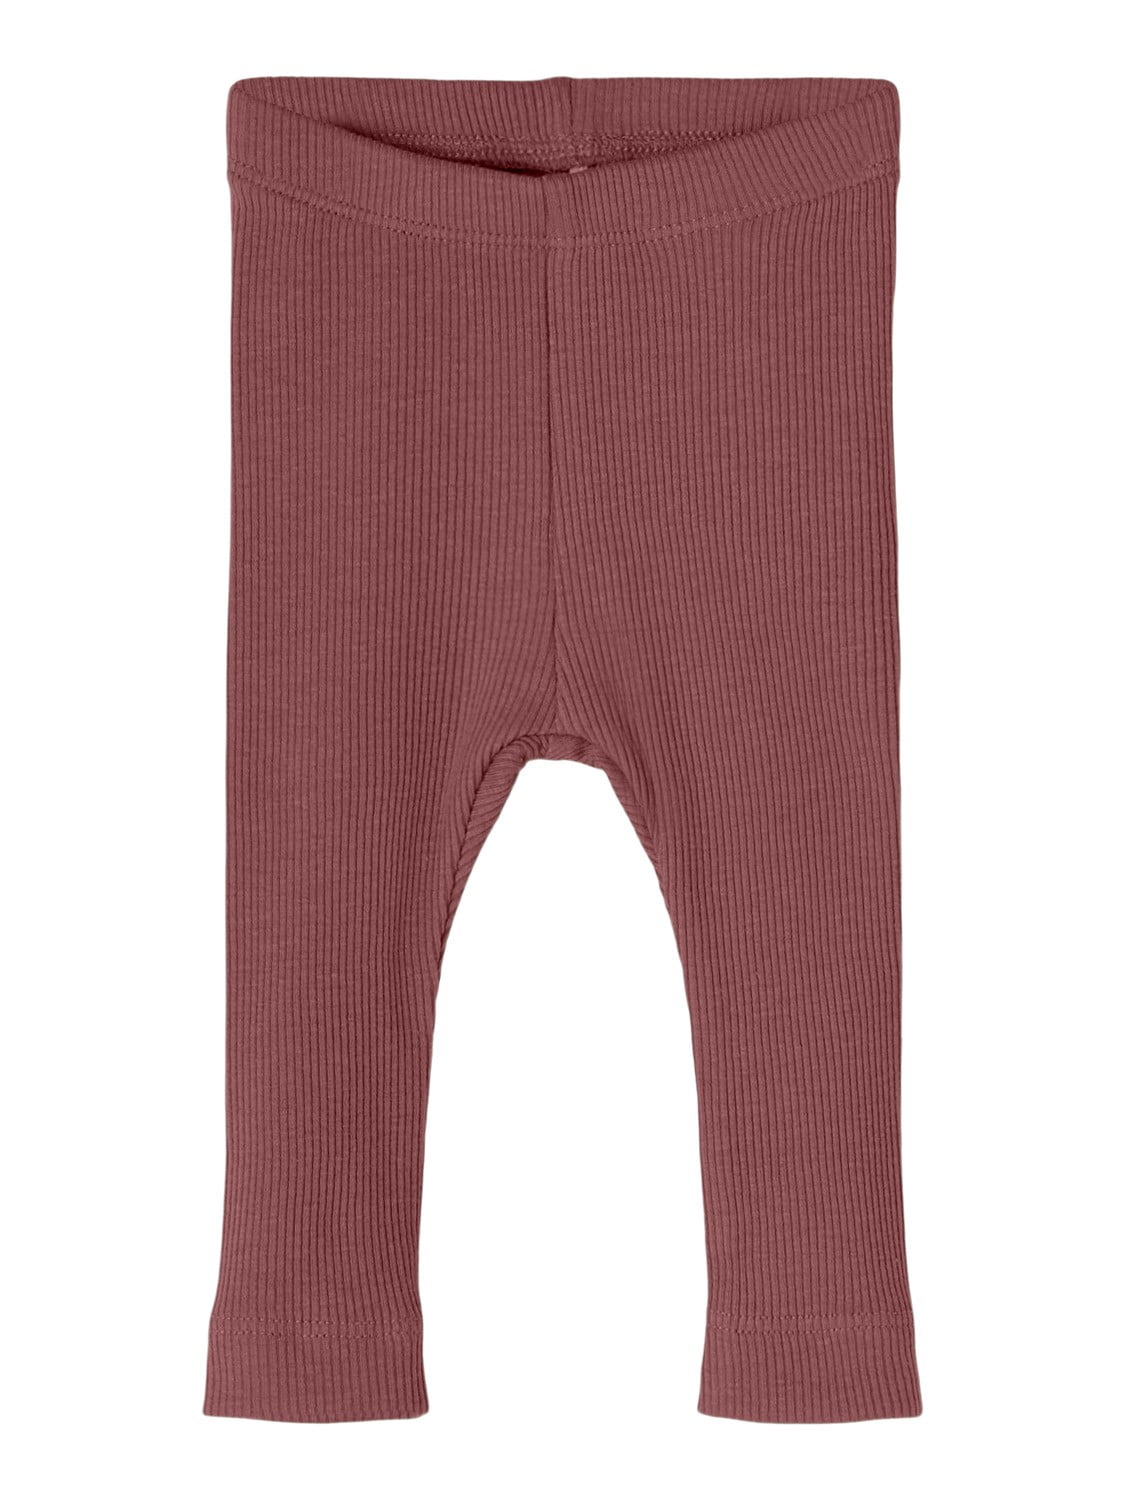 Colanți pantaloni bumbac organic şi modal pentru copii apple butter Name It